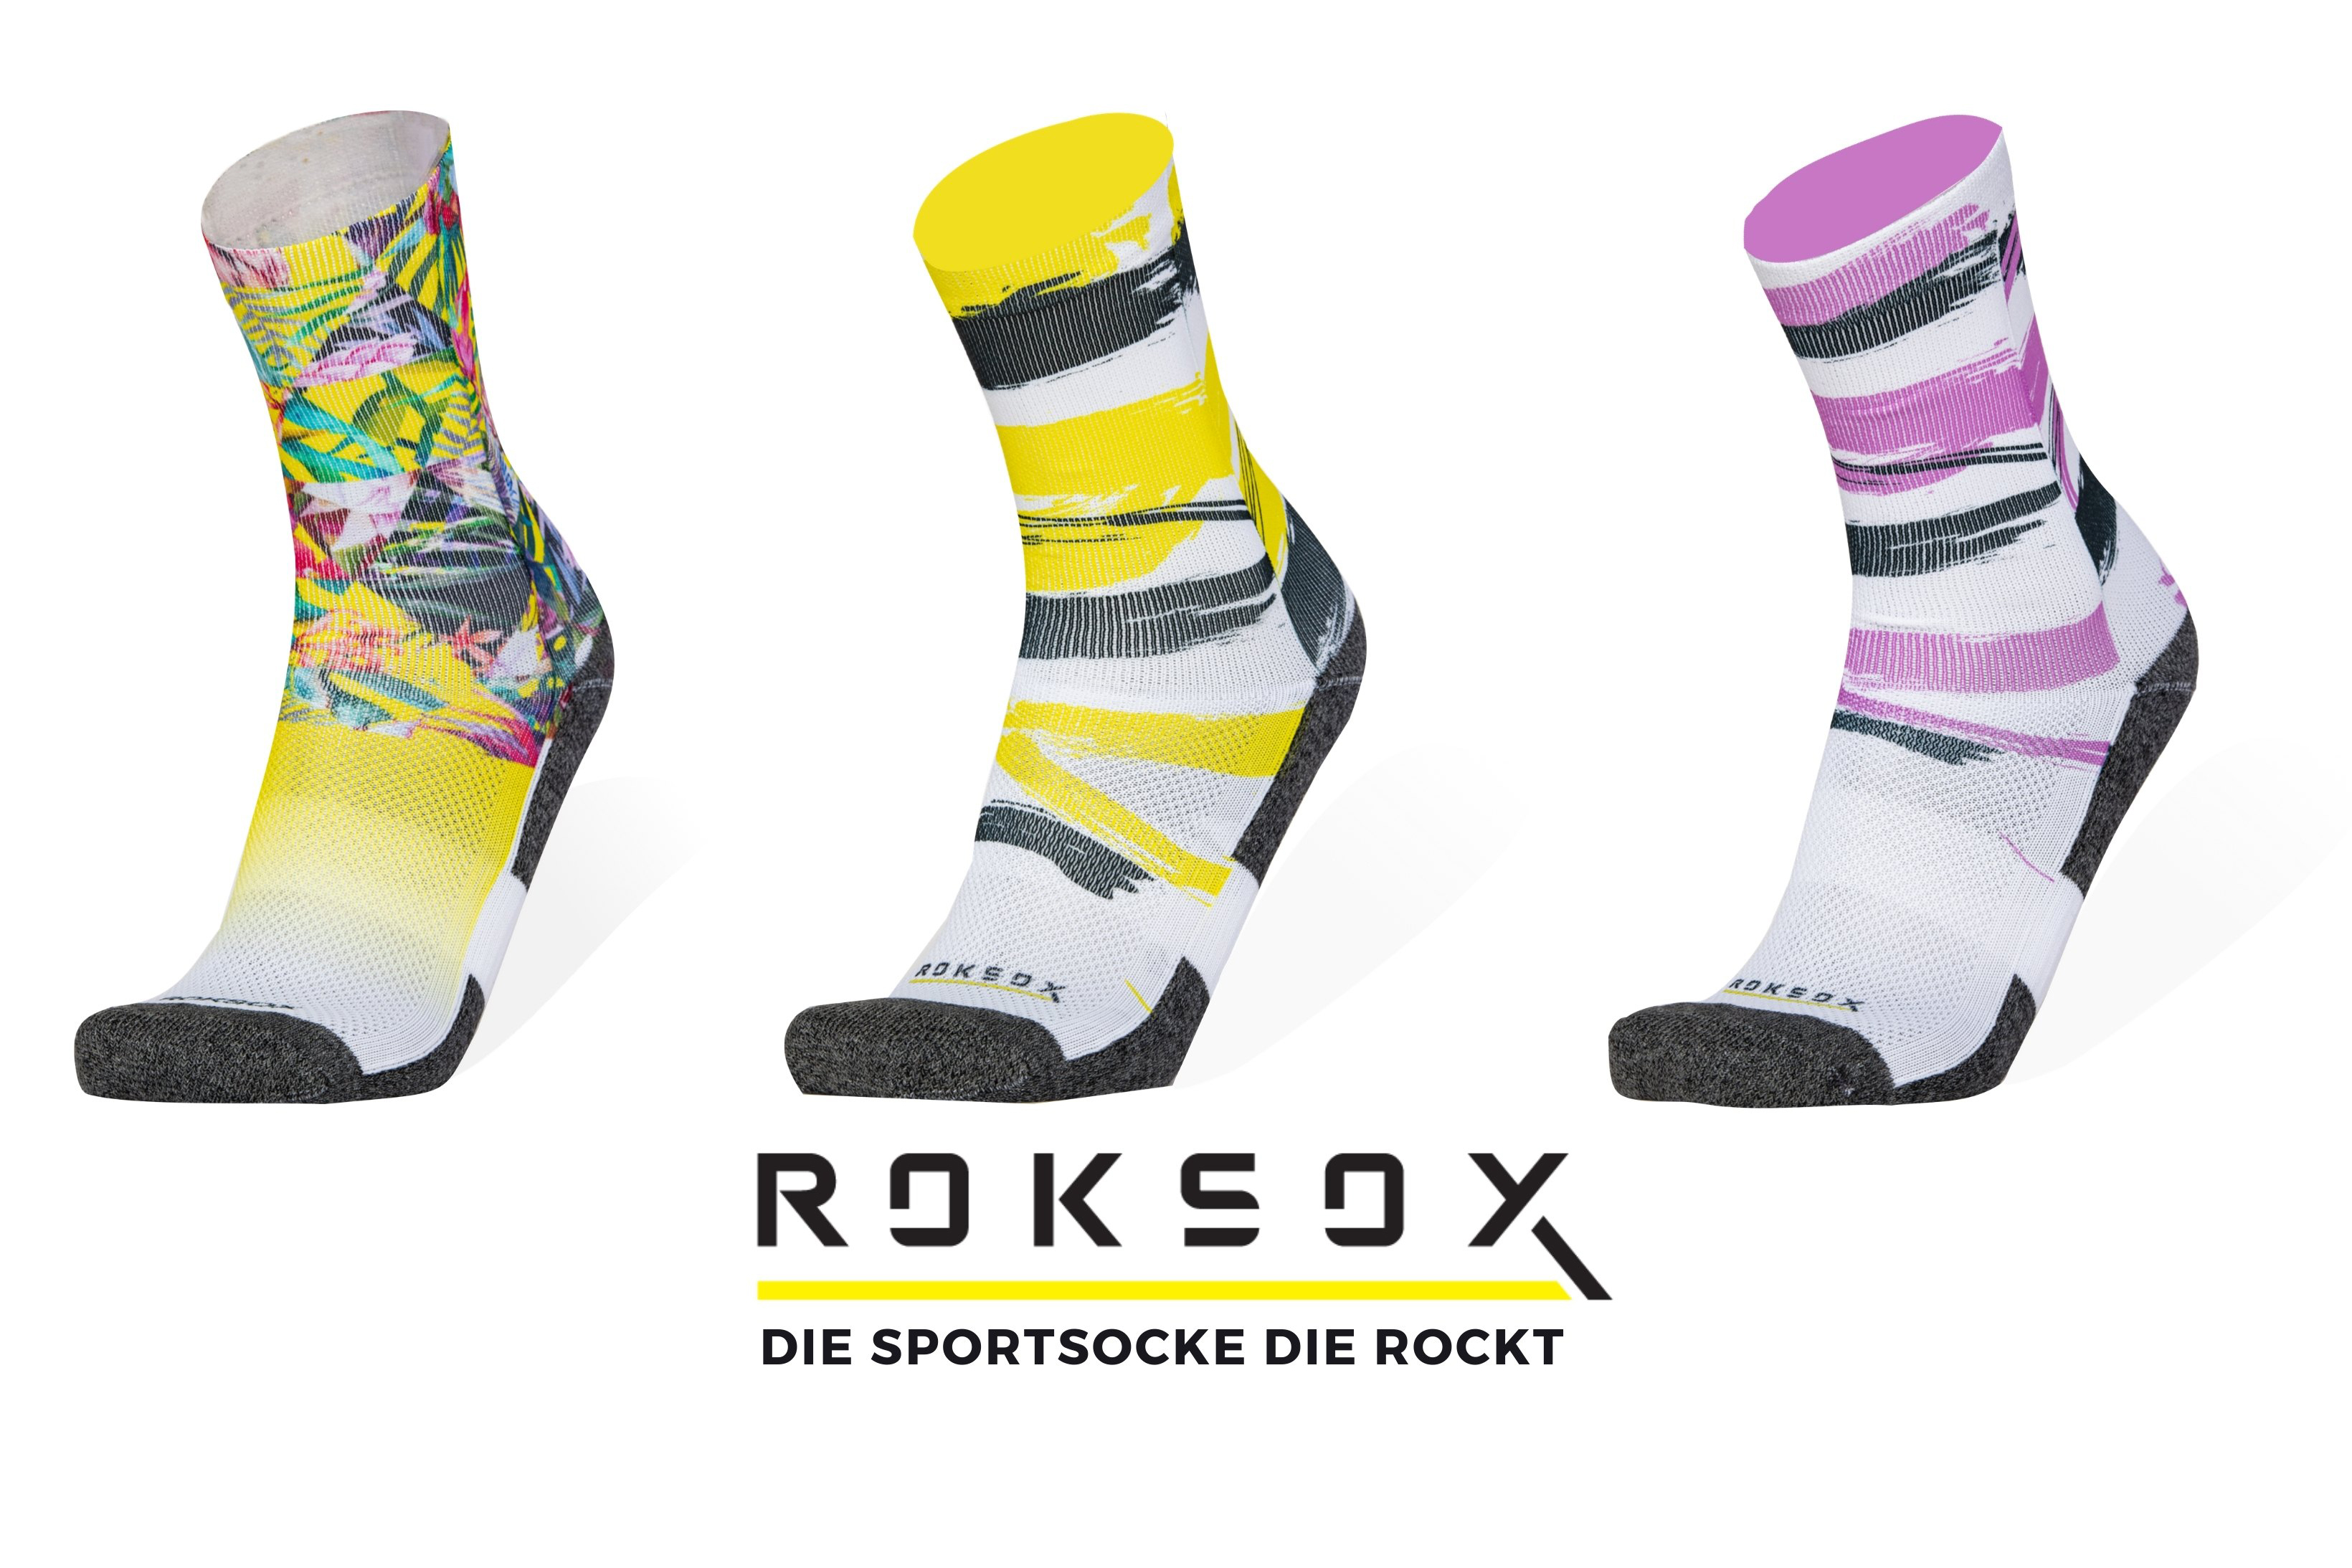 Verschiedene Designs der ROKSOX